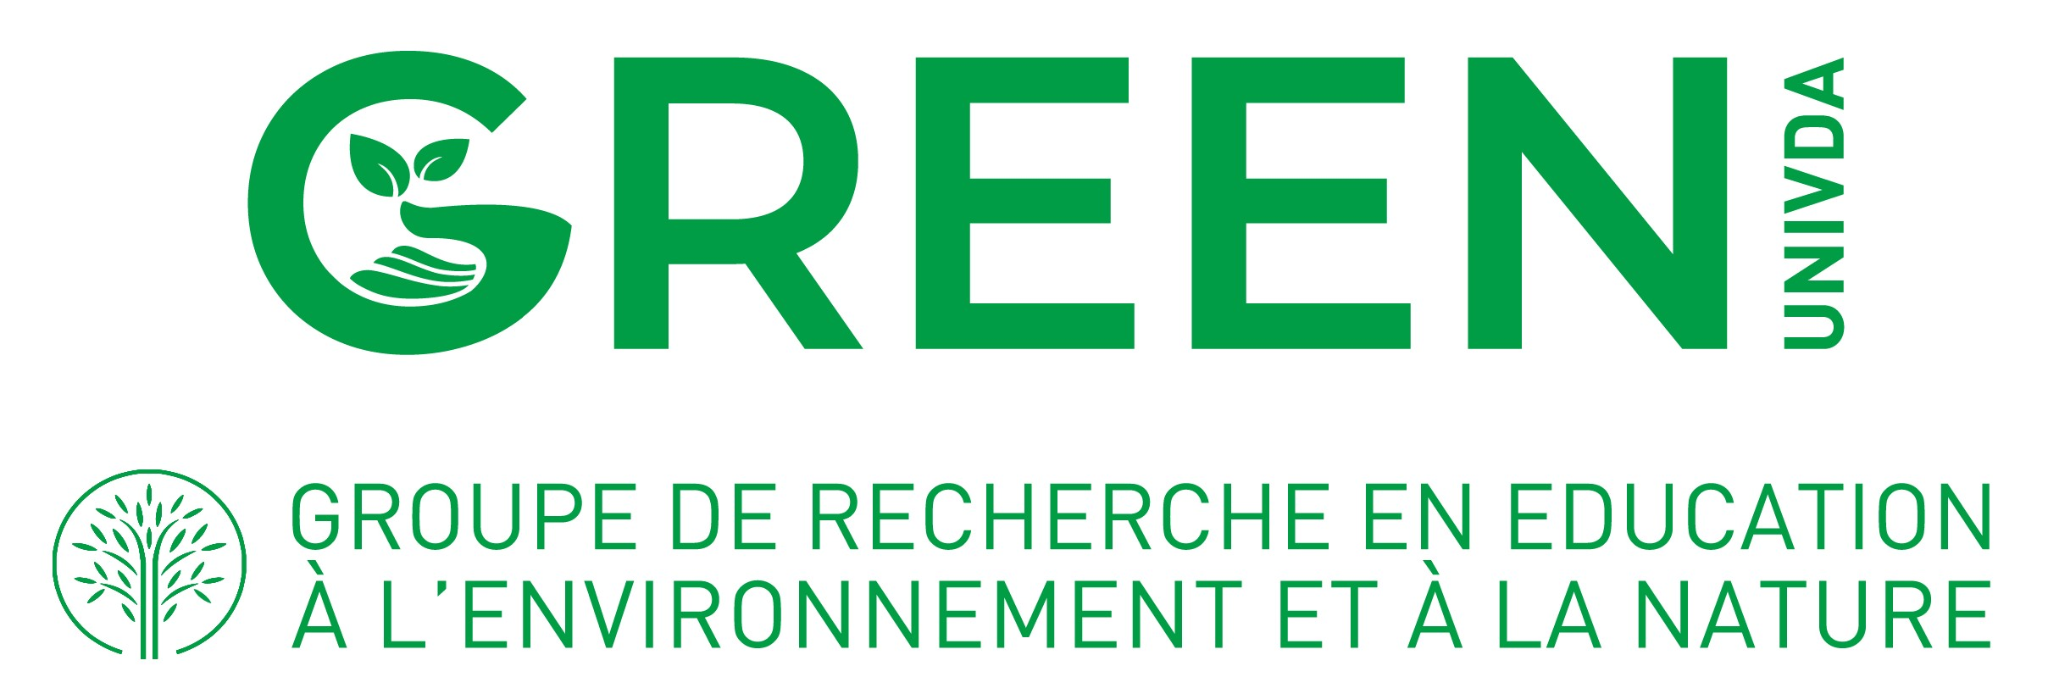 GREEN  - Groupe de Recherche en Education à l’Environnement et à la Nature